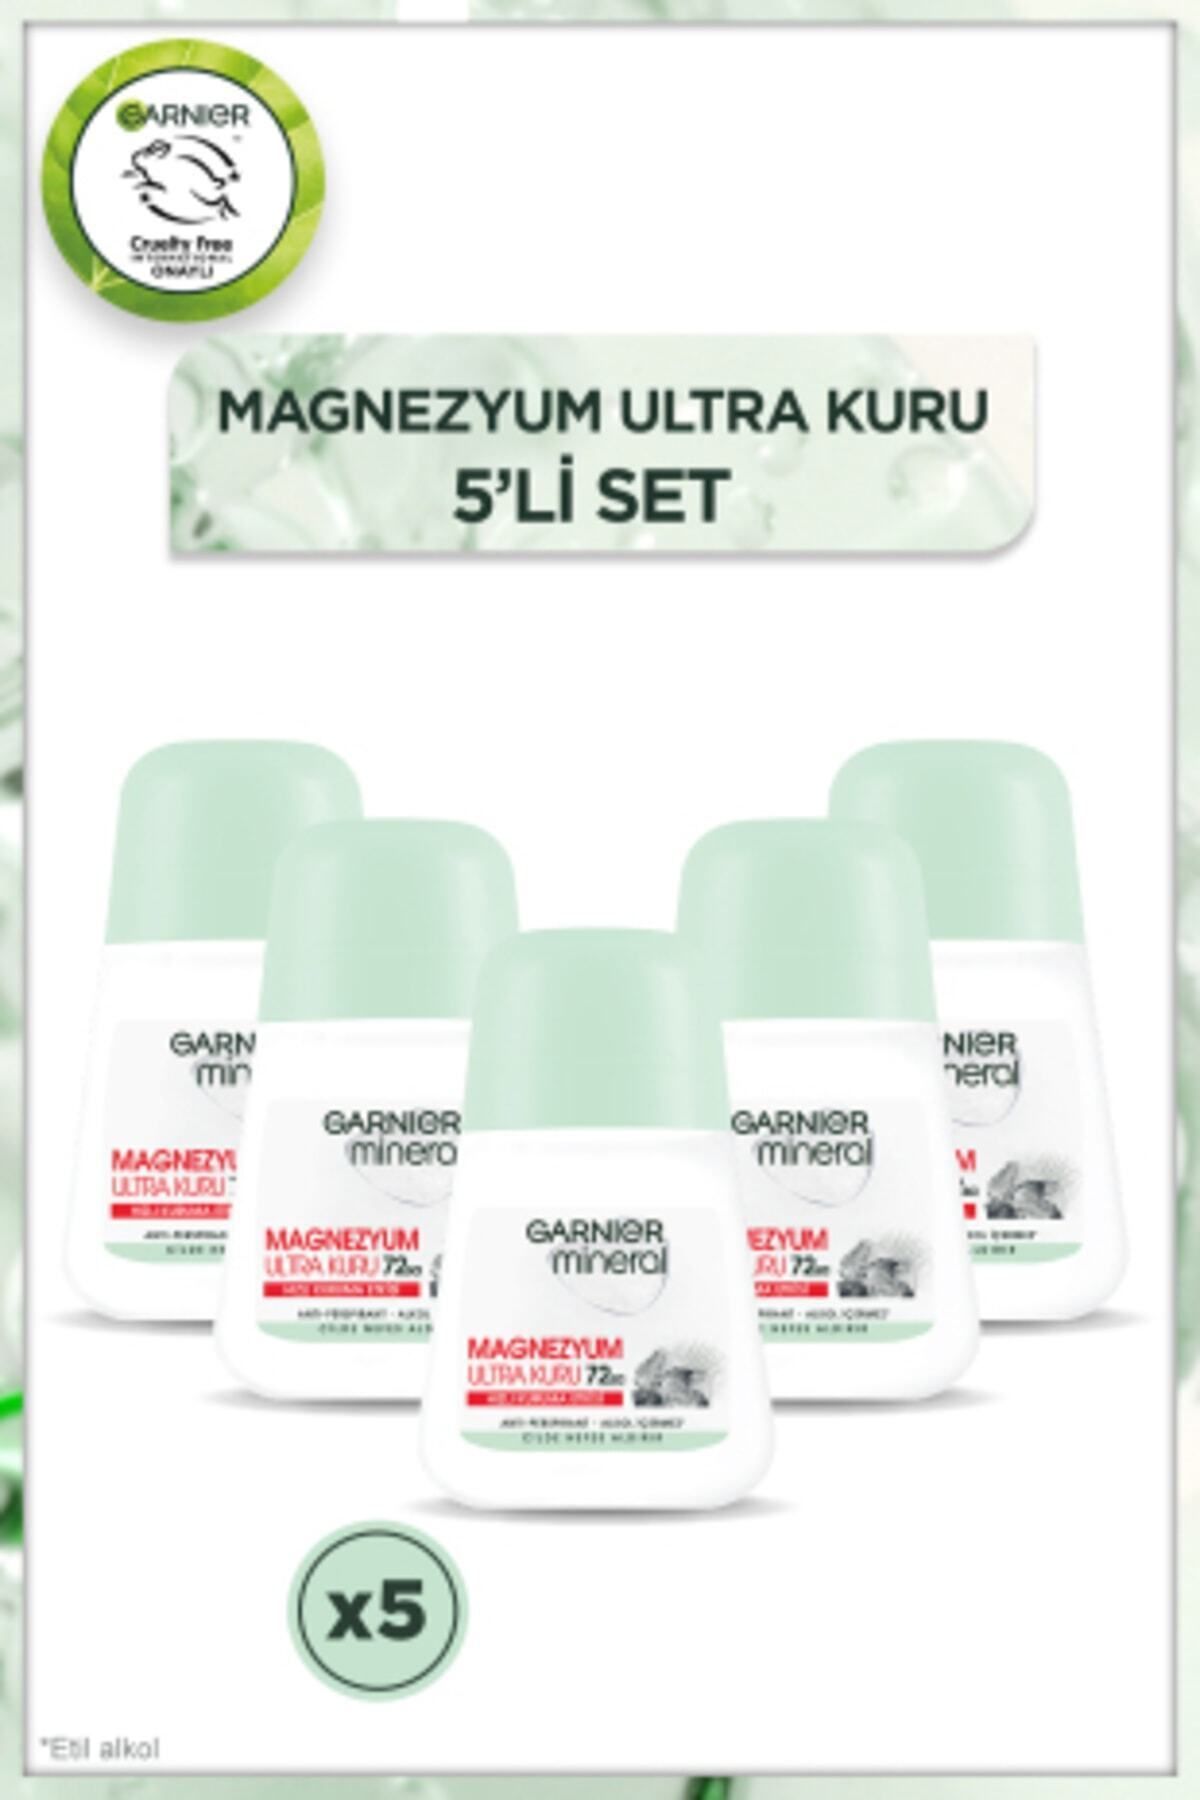 Garnier 5'li Garnier Mineral Magnezyum Ultra Kuru Roll-On Deodorant Seti